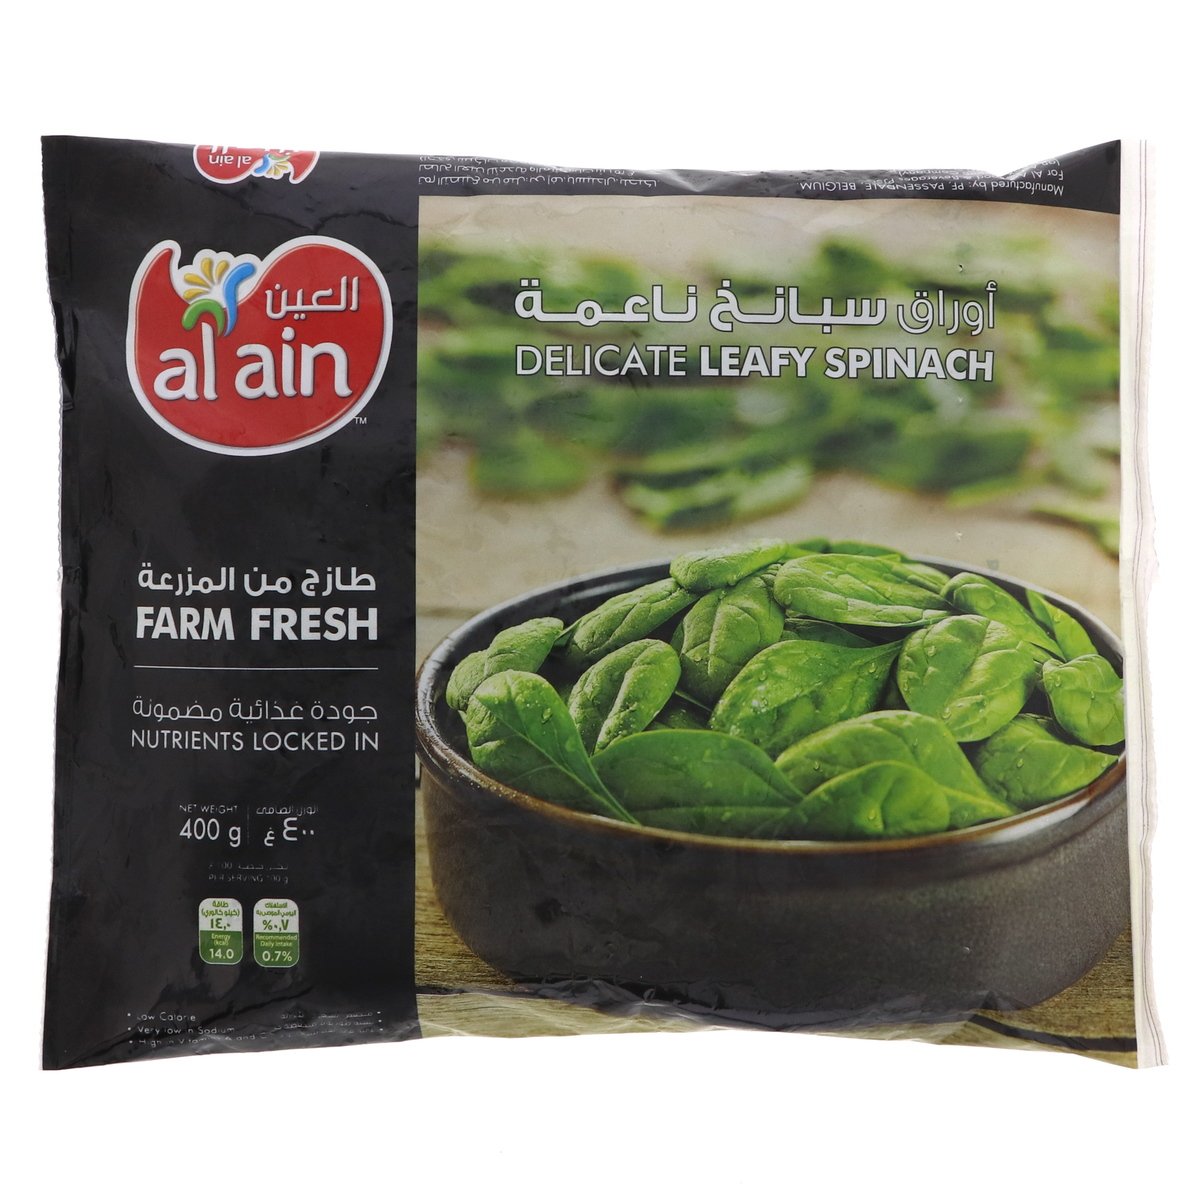 Buy Al Ain Delicate Leafy Spinach 400 g Online at Best Price | Othr.Froz. Vegetable | Lulu UAE in UAE